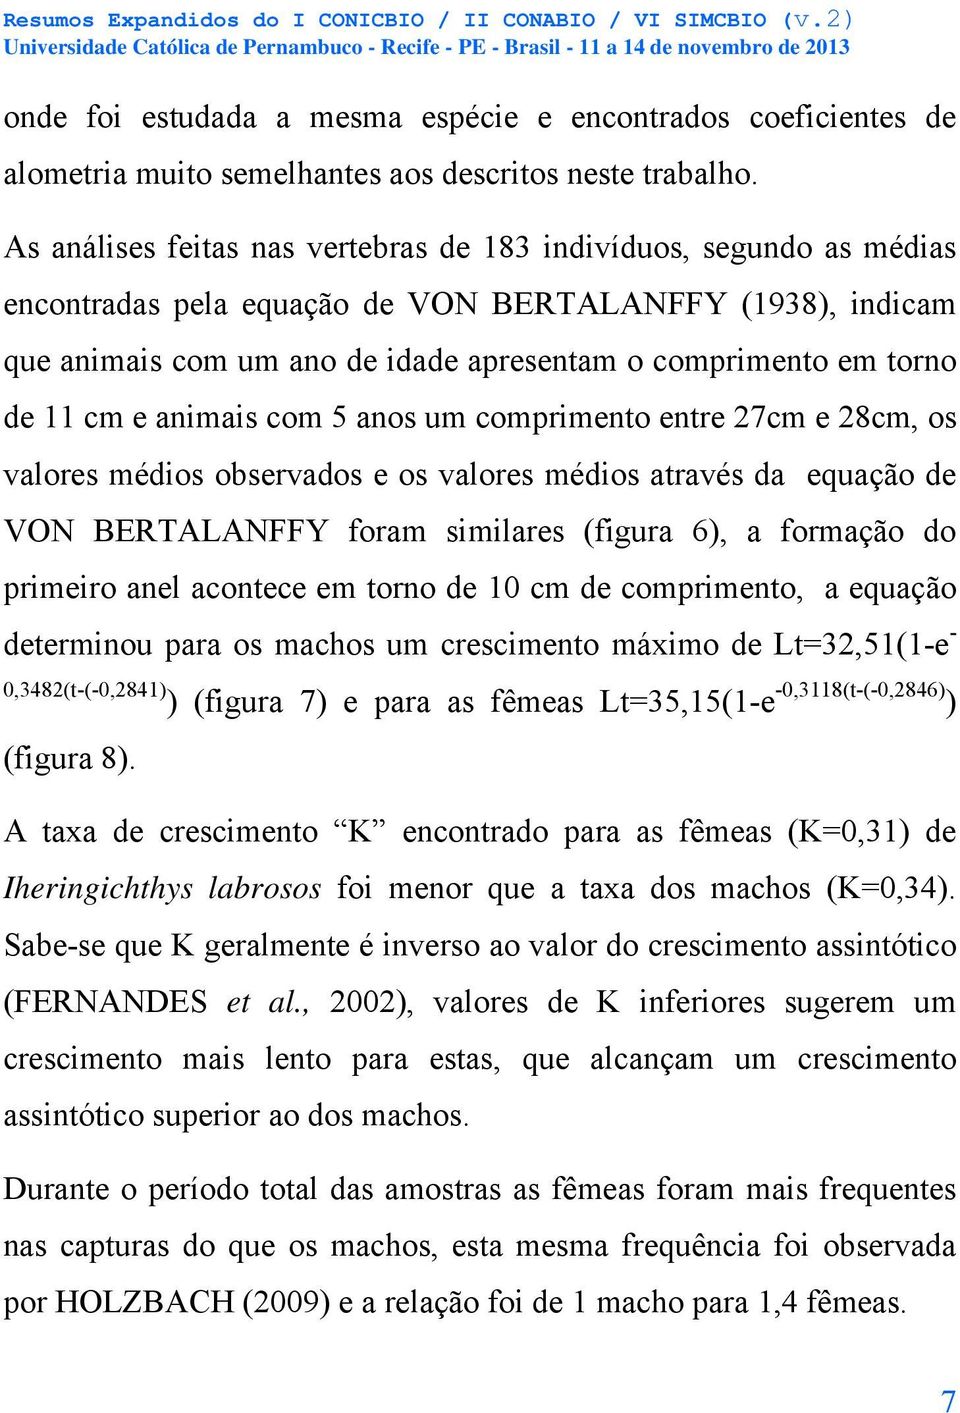 11 cm e animais com 5 anos um comprimento entre 27cm e 28cm, os valores médios observados e os valores médios através da equação de VON BERTALANFFY foram similares (figura 6), a formação do primeiro